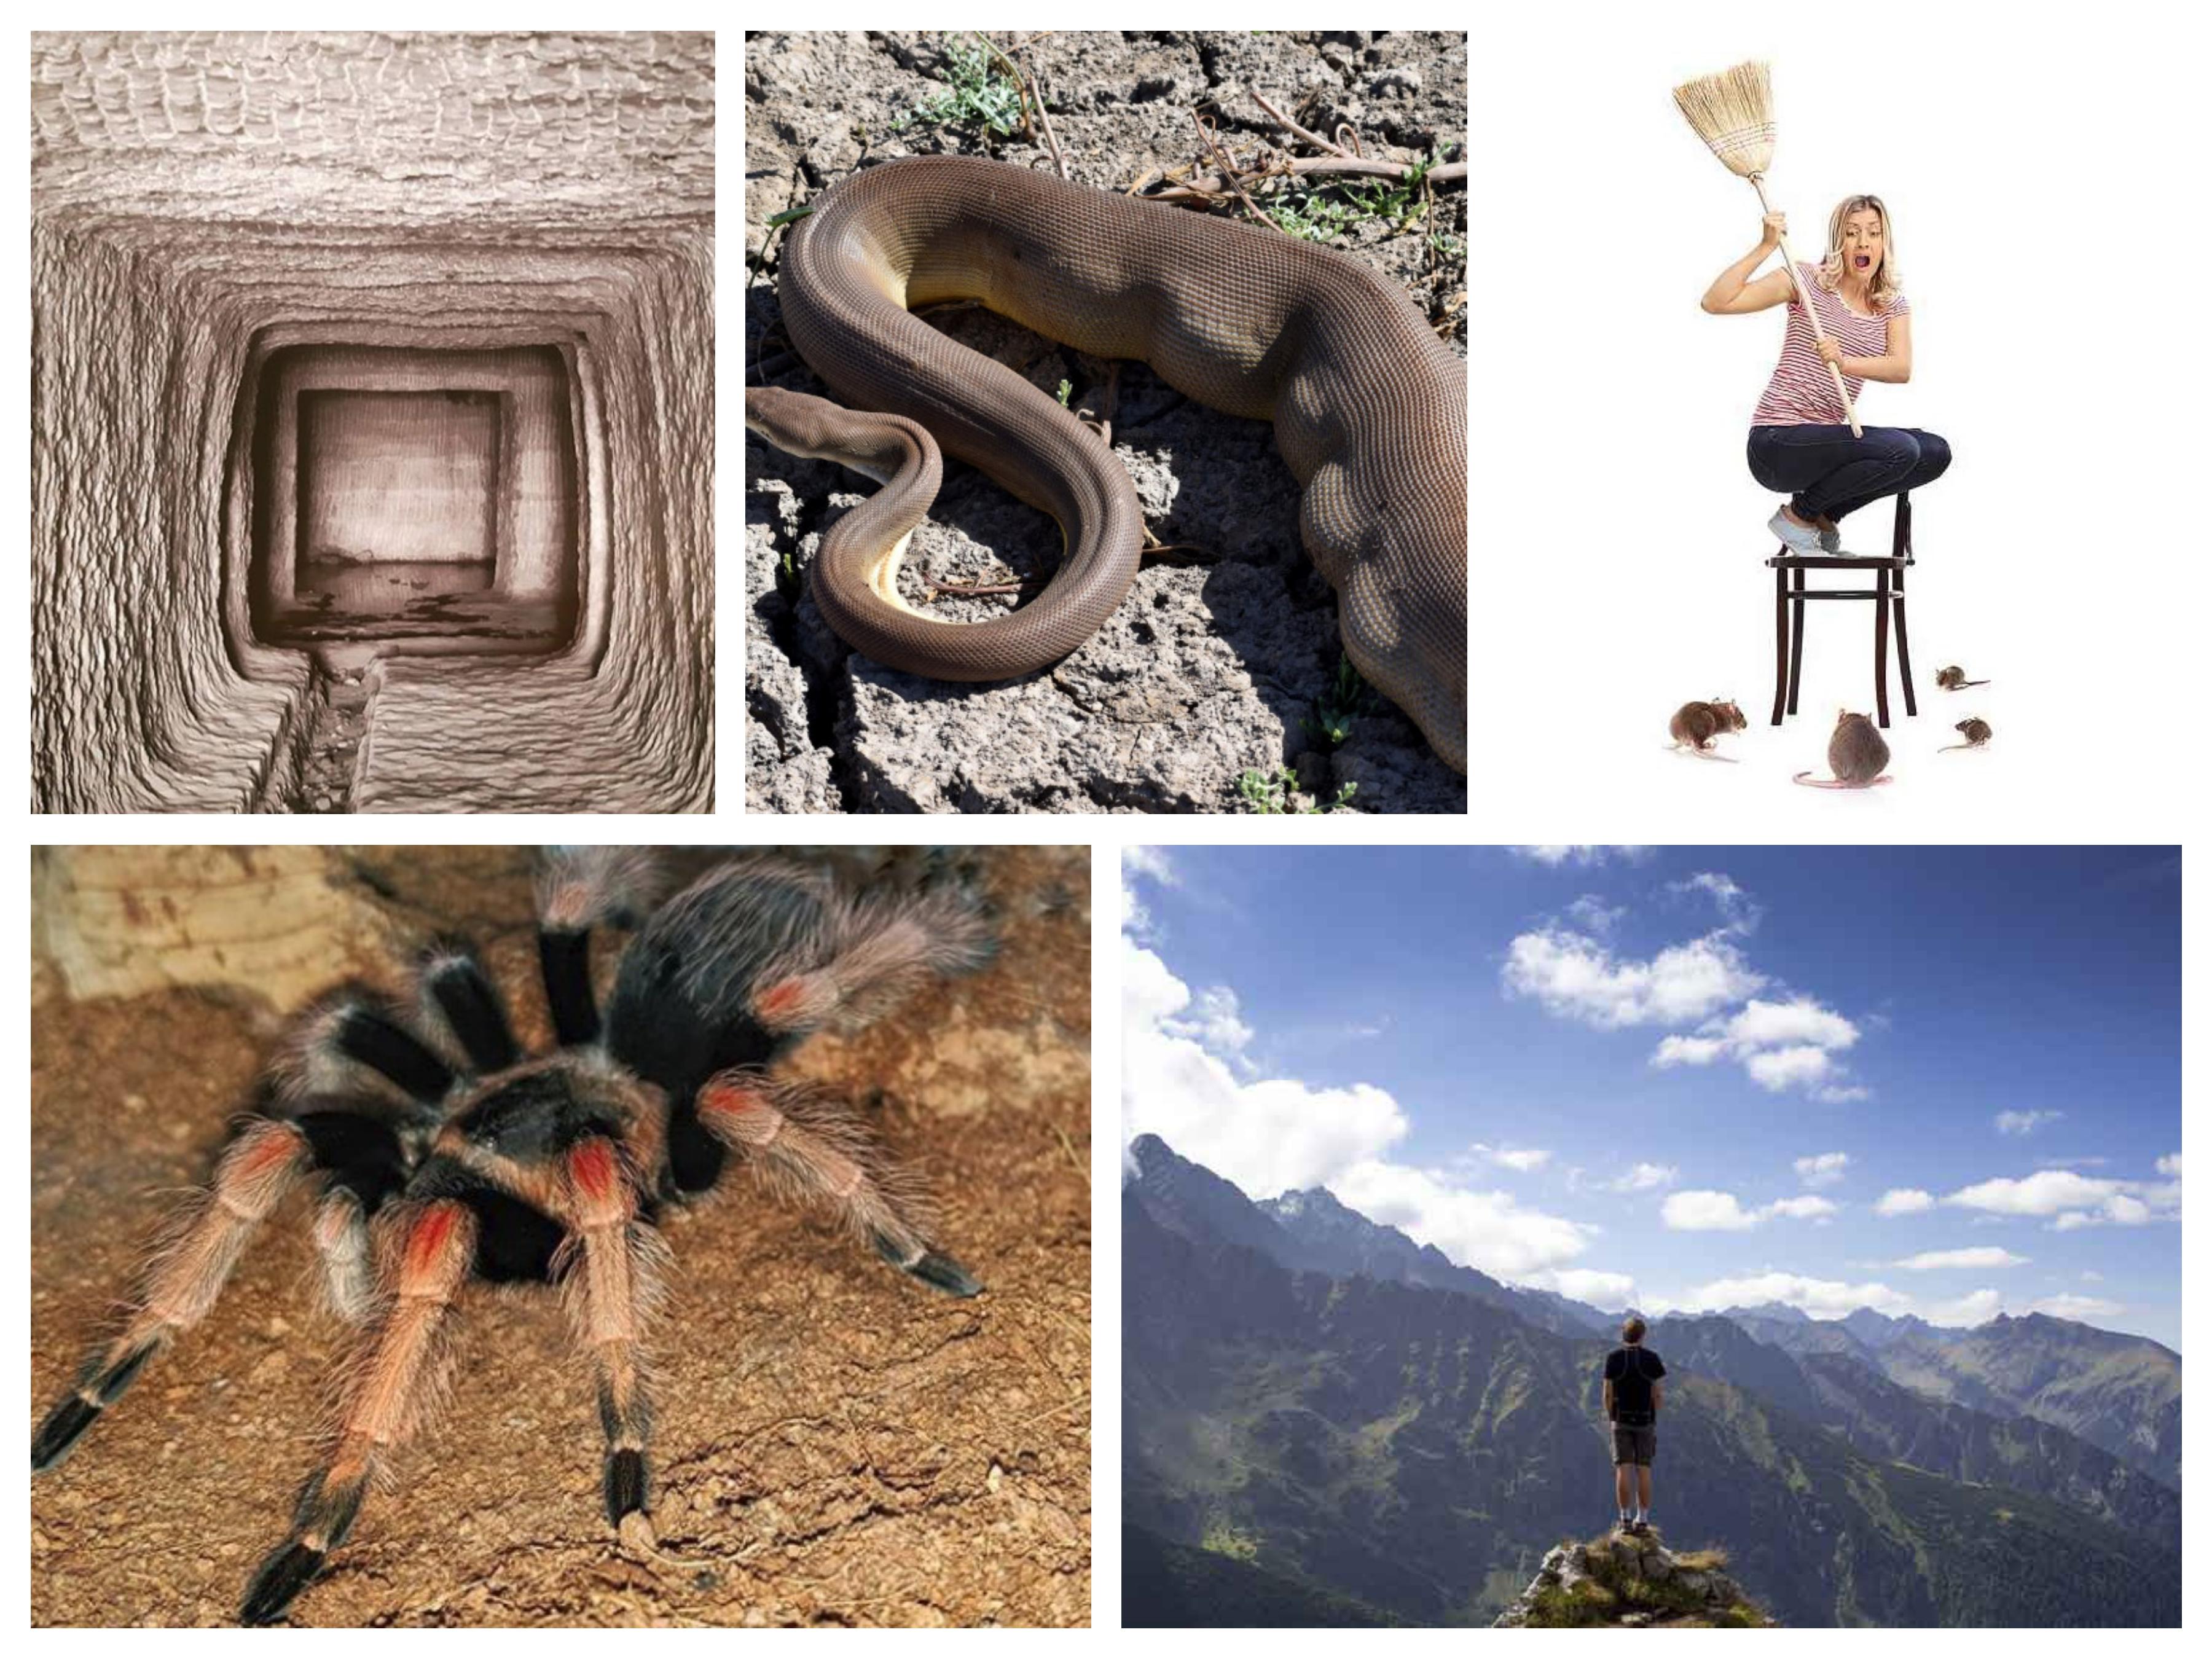 Čega se bojite: Visine, zmija, pauka, miševa ili nečeg drugog